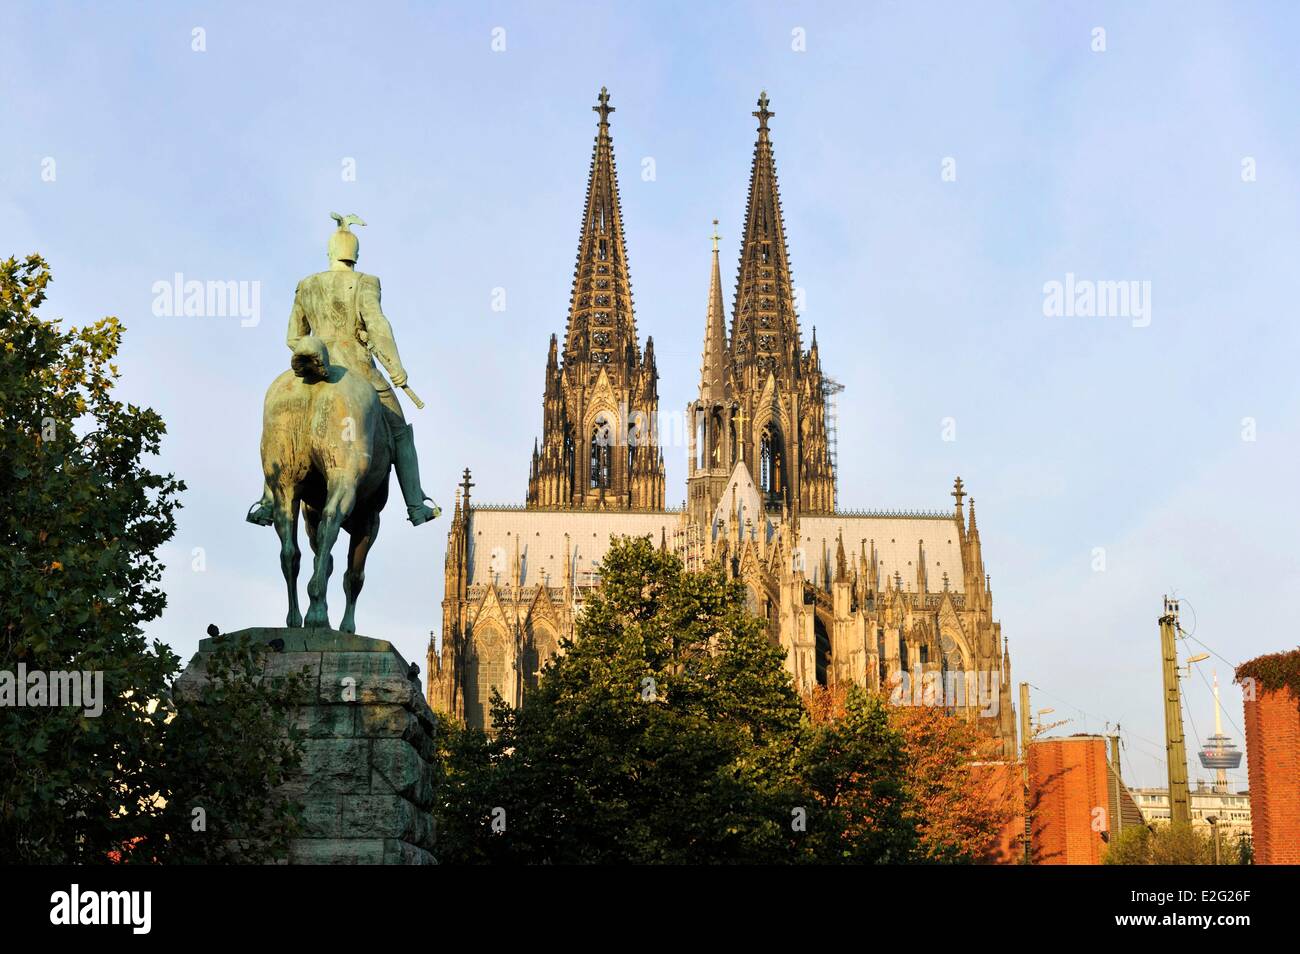 Germania Nord Reno Westfalia Colonia statua equestre di Guglielmo II sul ponte Hohenzollernbruecke e la cattedrale di Foto Stock